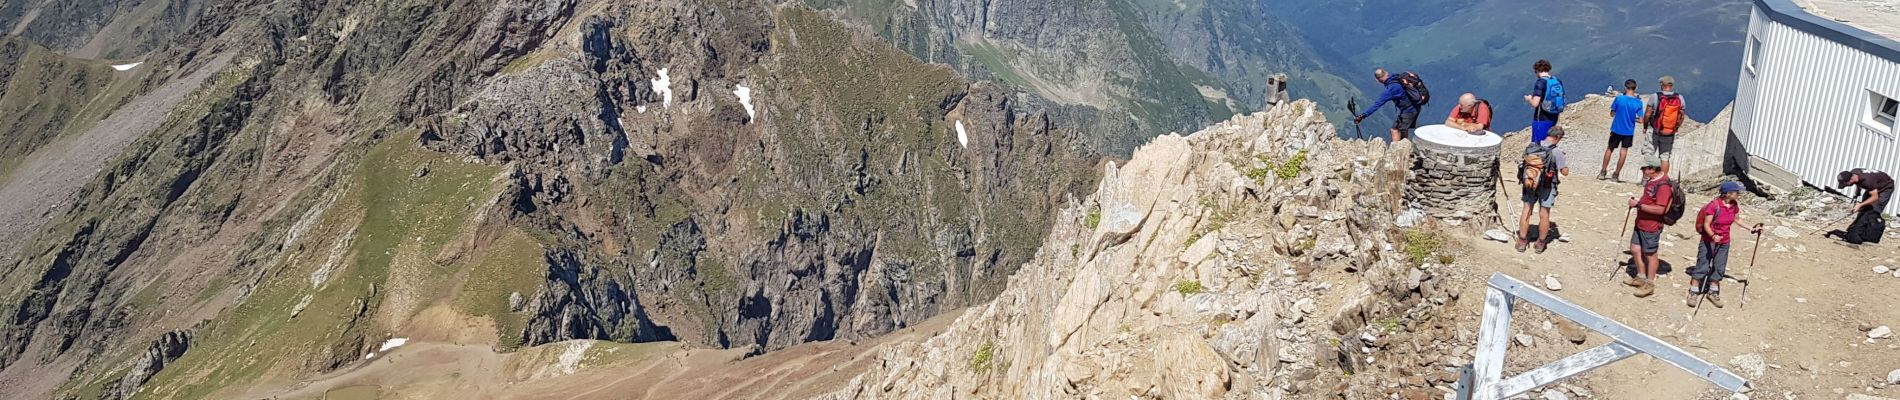 Excursión Senderismo Sers - départ du tourmalet jusqu'au pic du midi de Bigorre  - Photo